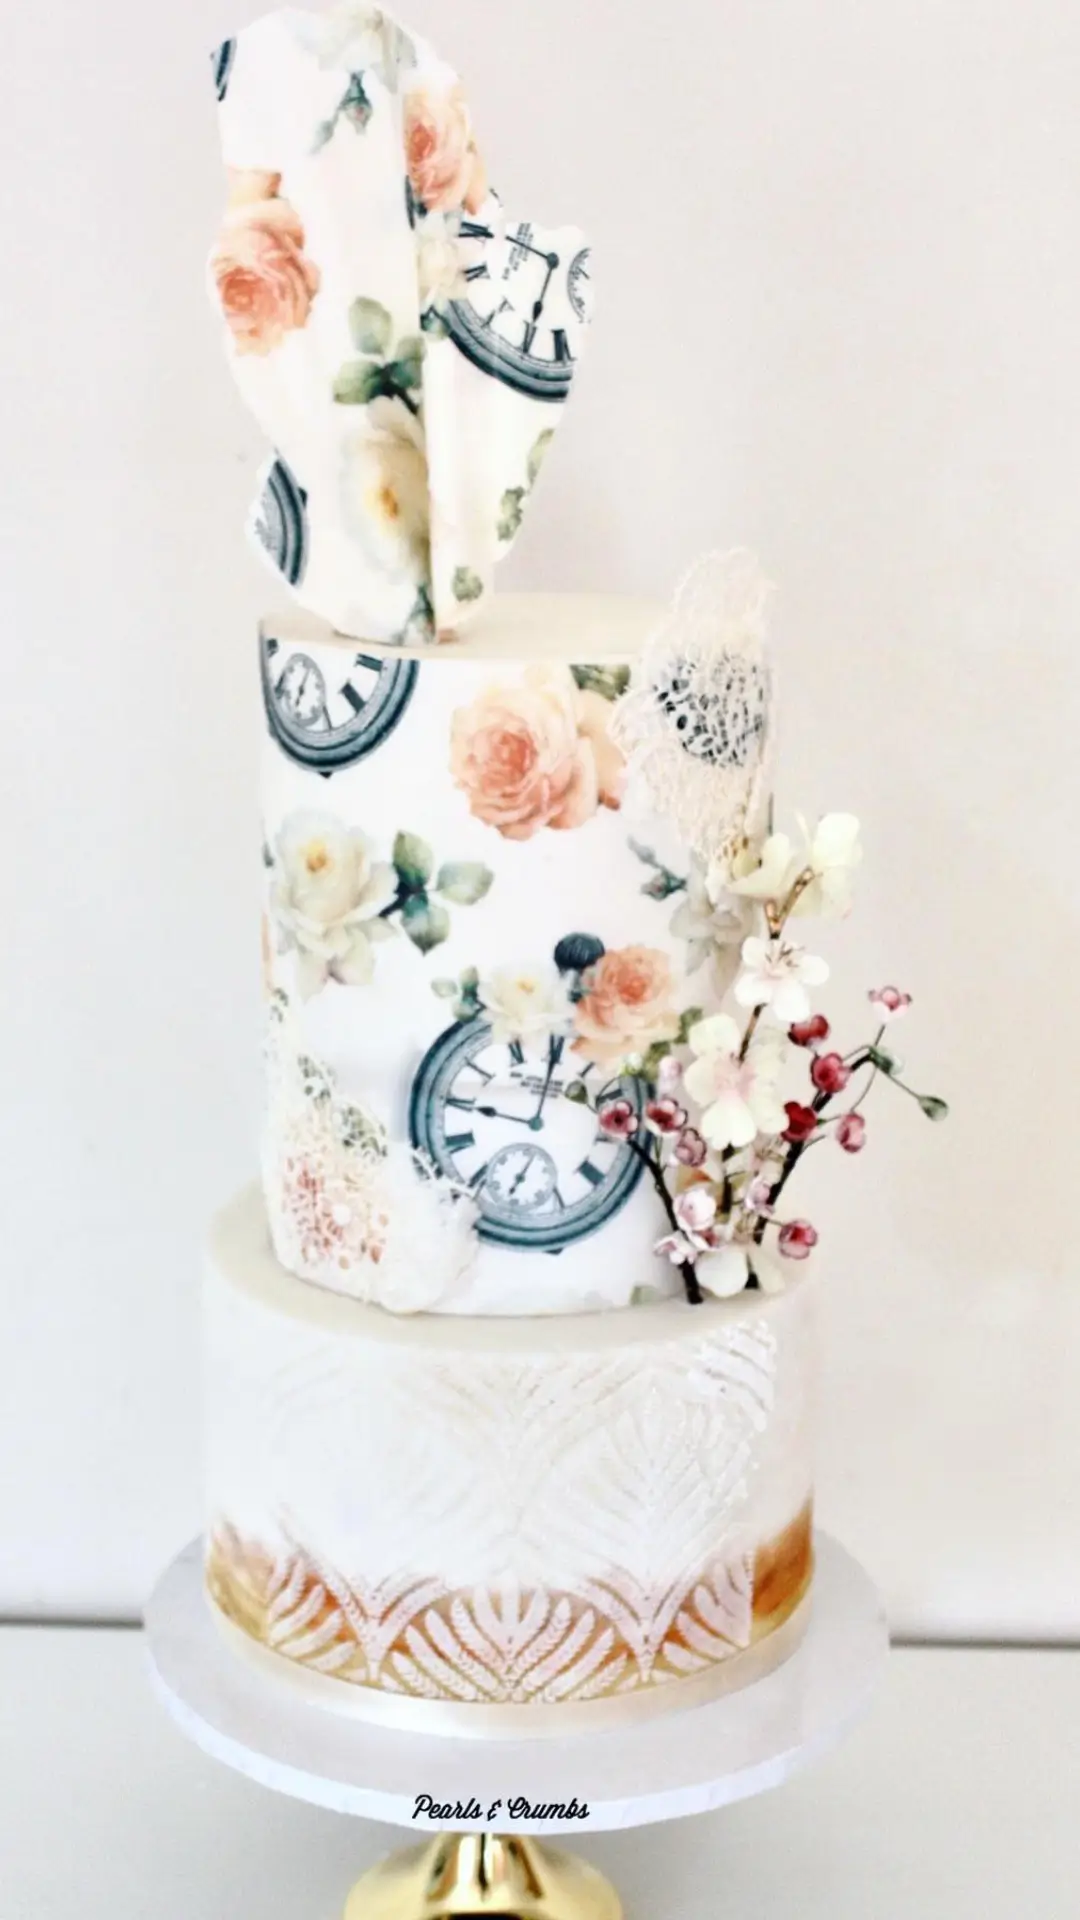 Pearls & Crumbs | Wedding Cakes London